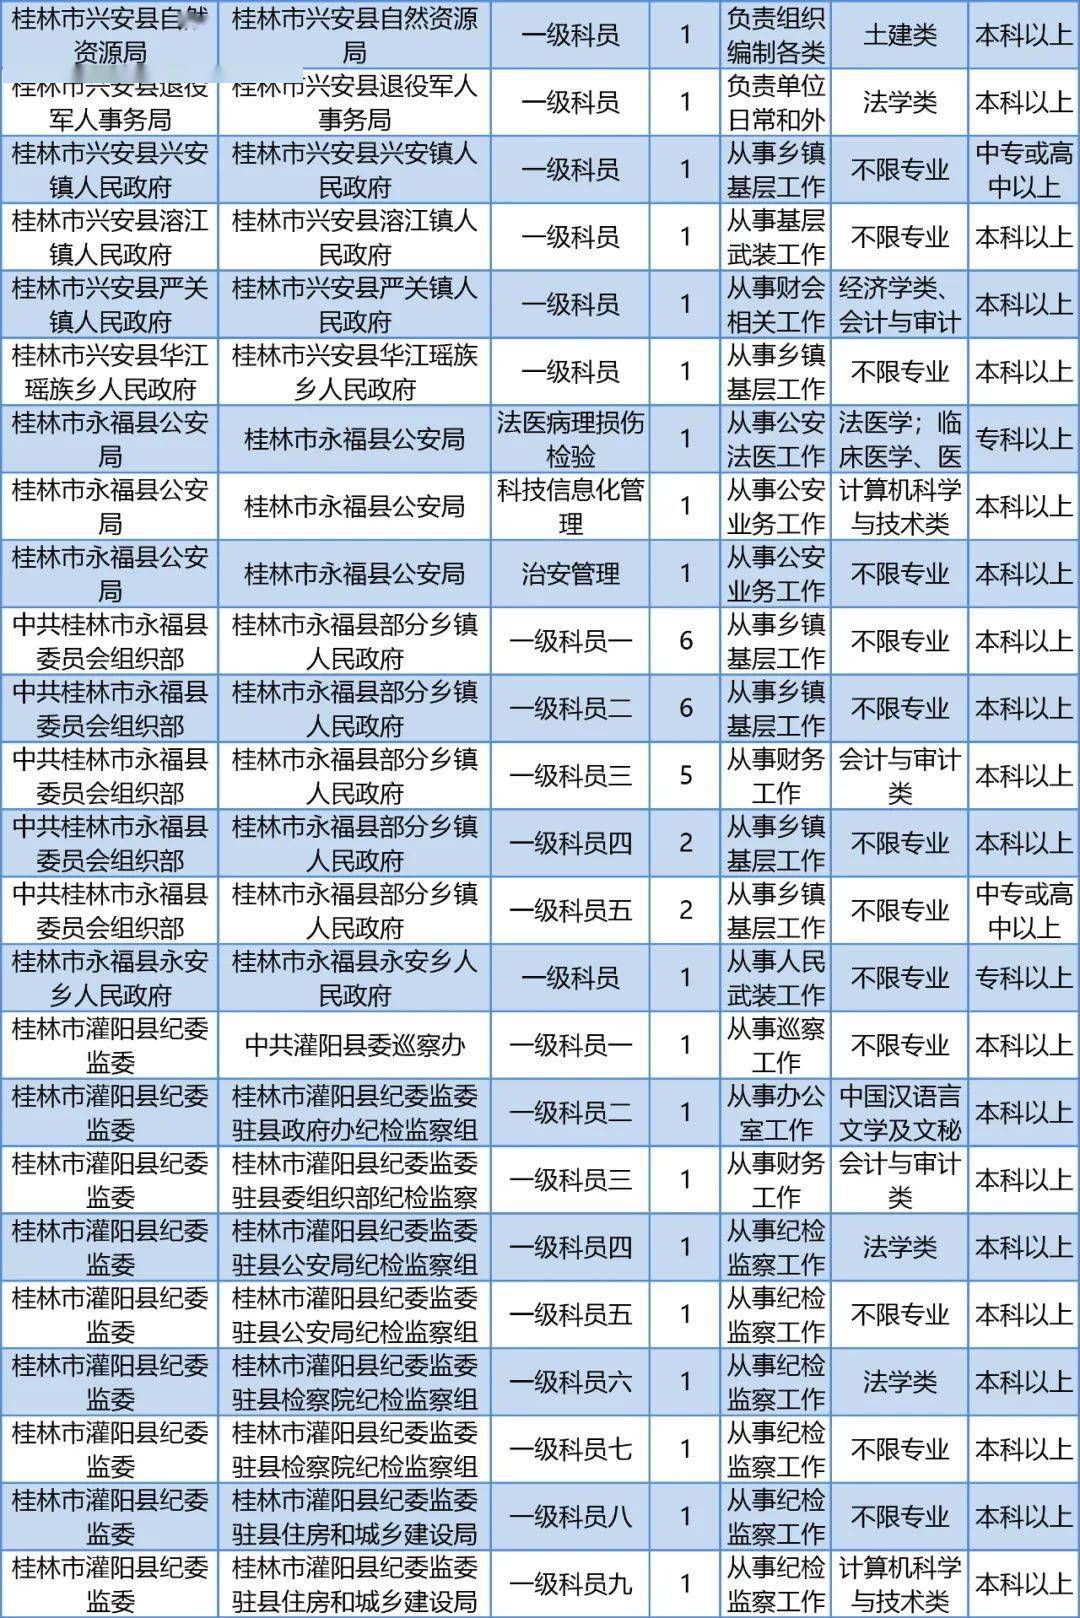 公务员招聘职位_公务员招聘职位一般有哪些 广东省考职位表查询